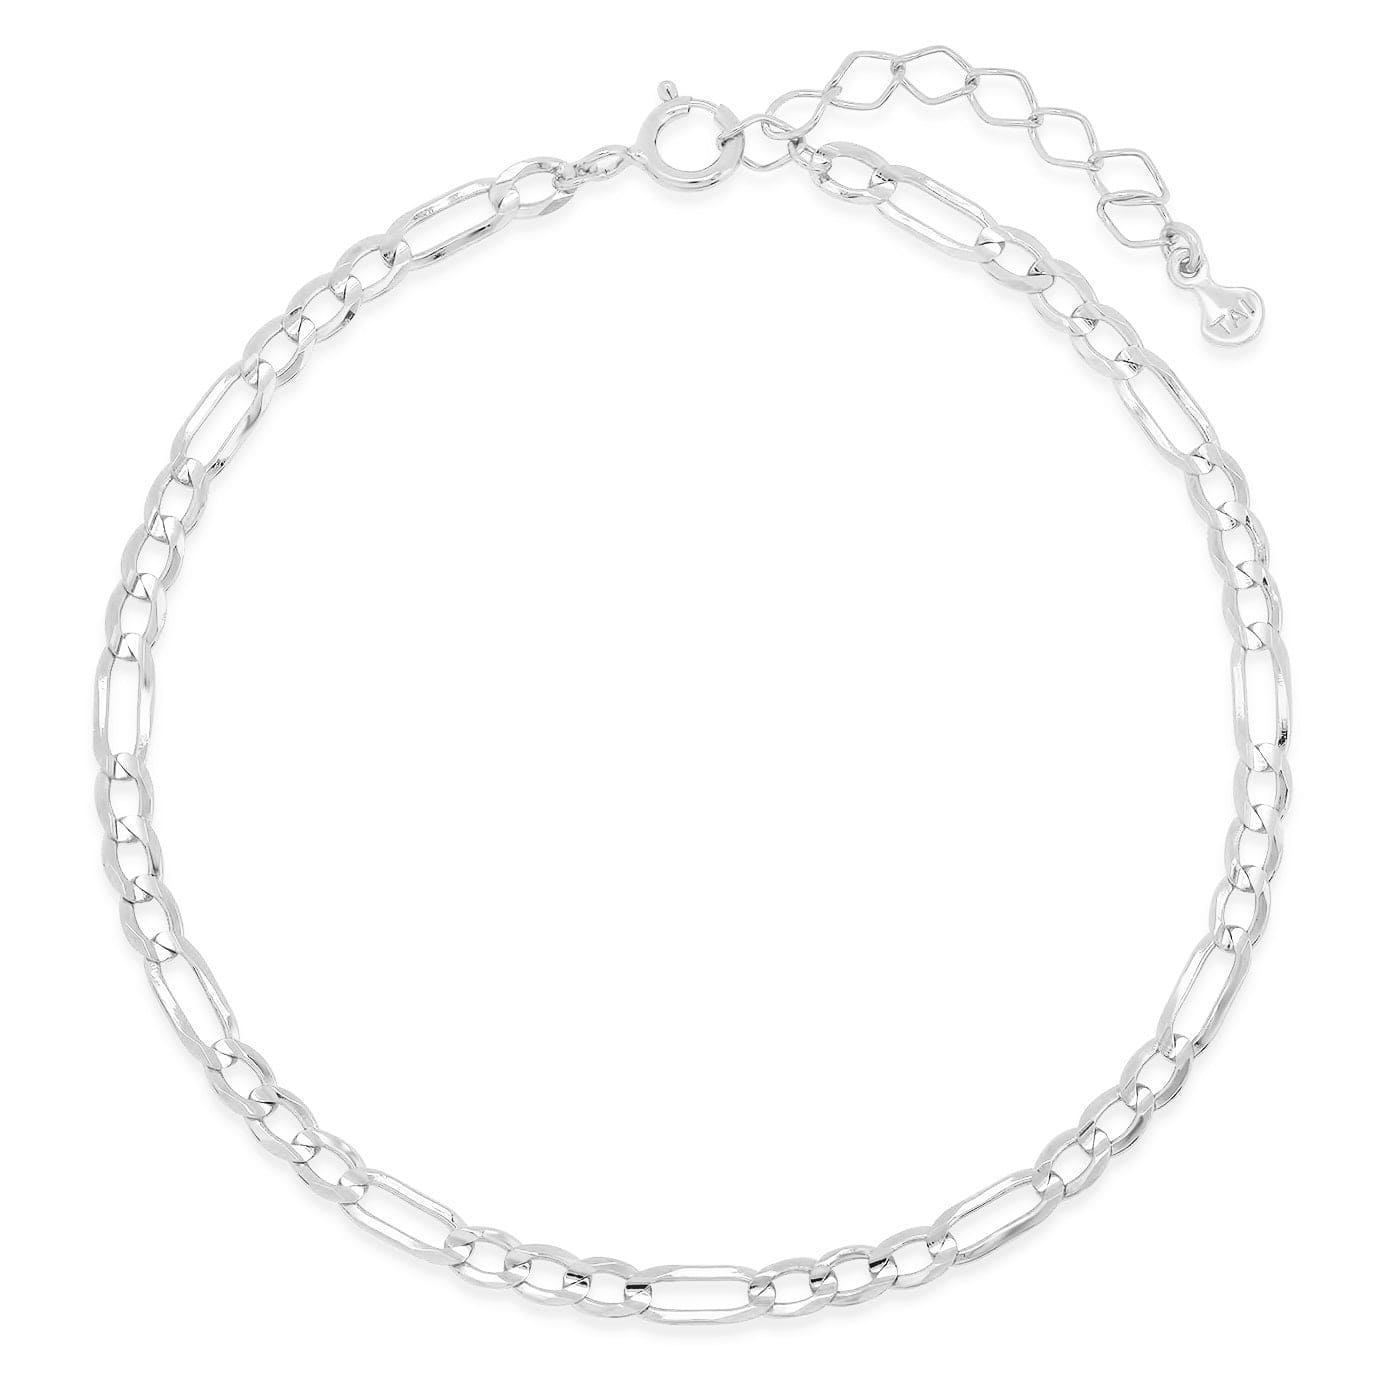 TAI JEWELRY Bracelet Silver Figaro Chain Bracelet